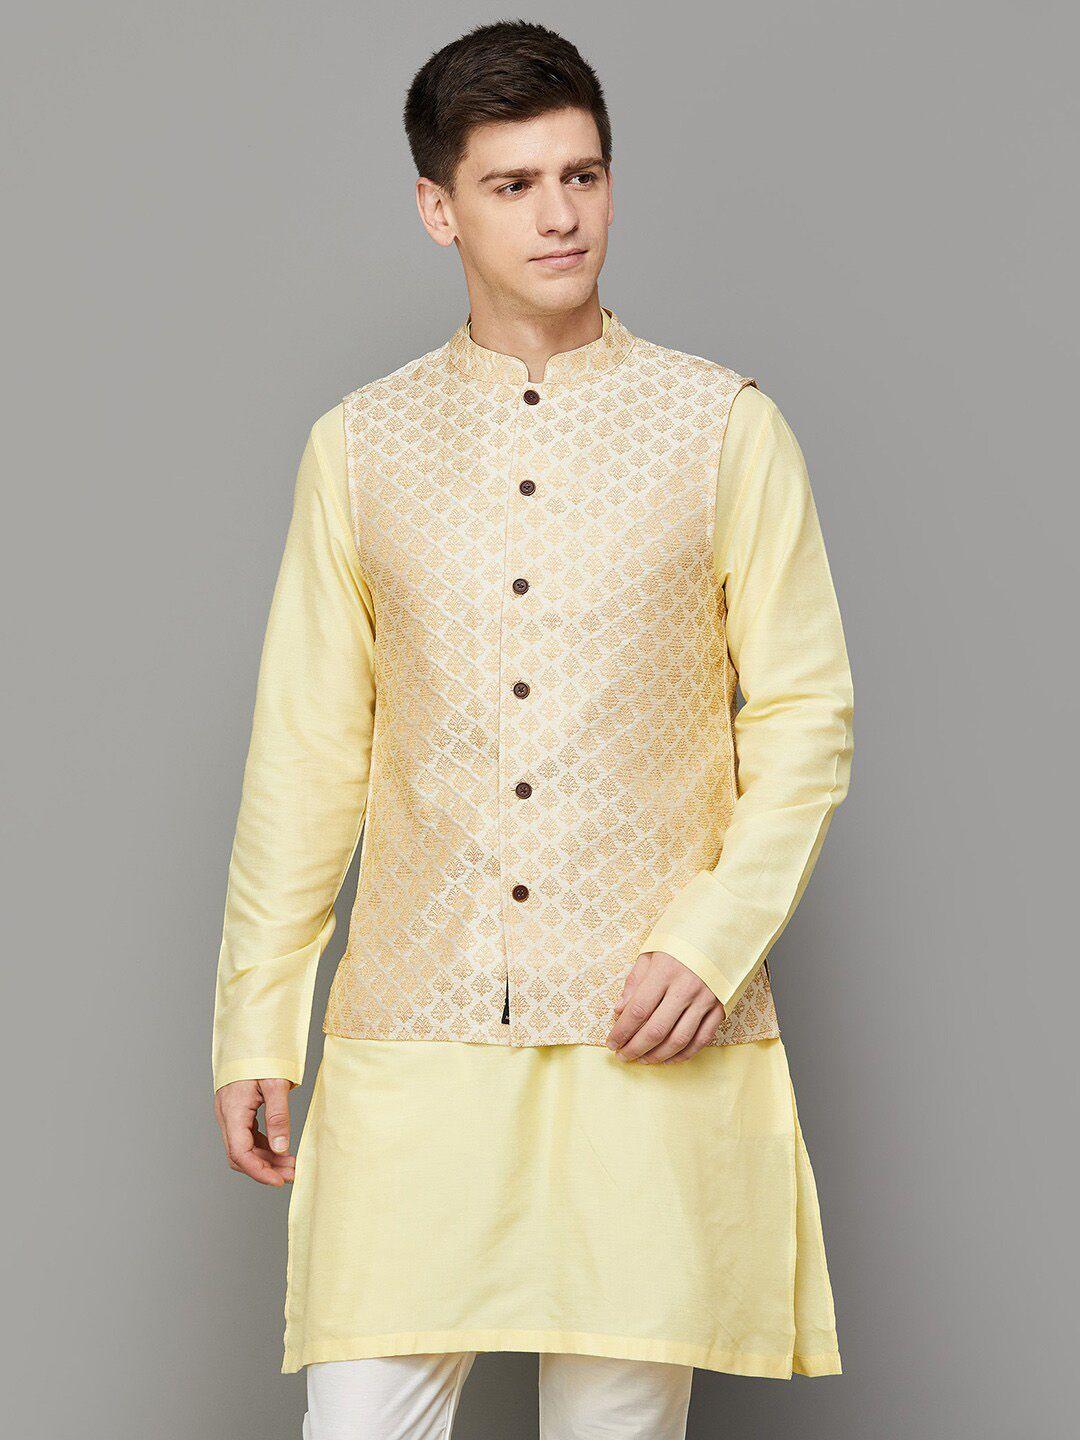 melange by lifestyle woven design mandarin collar nehru jackets